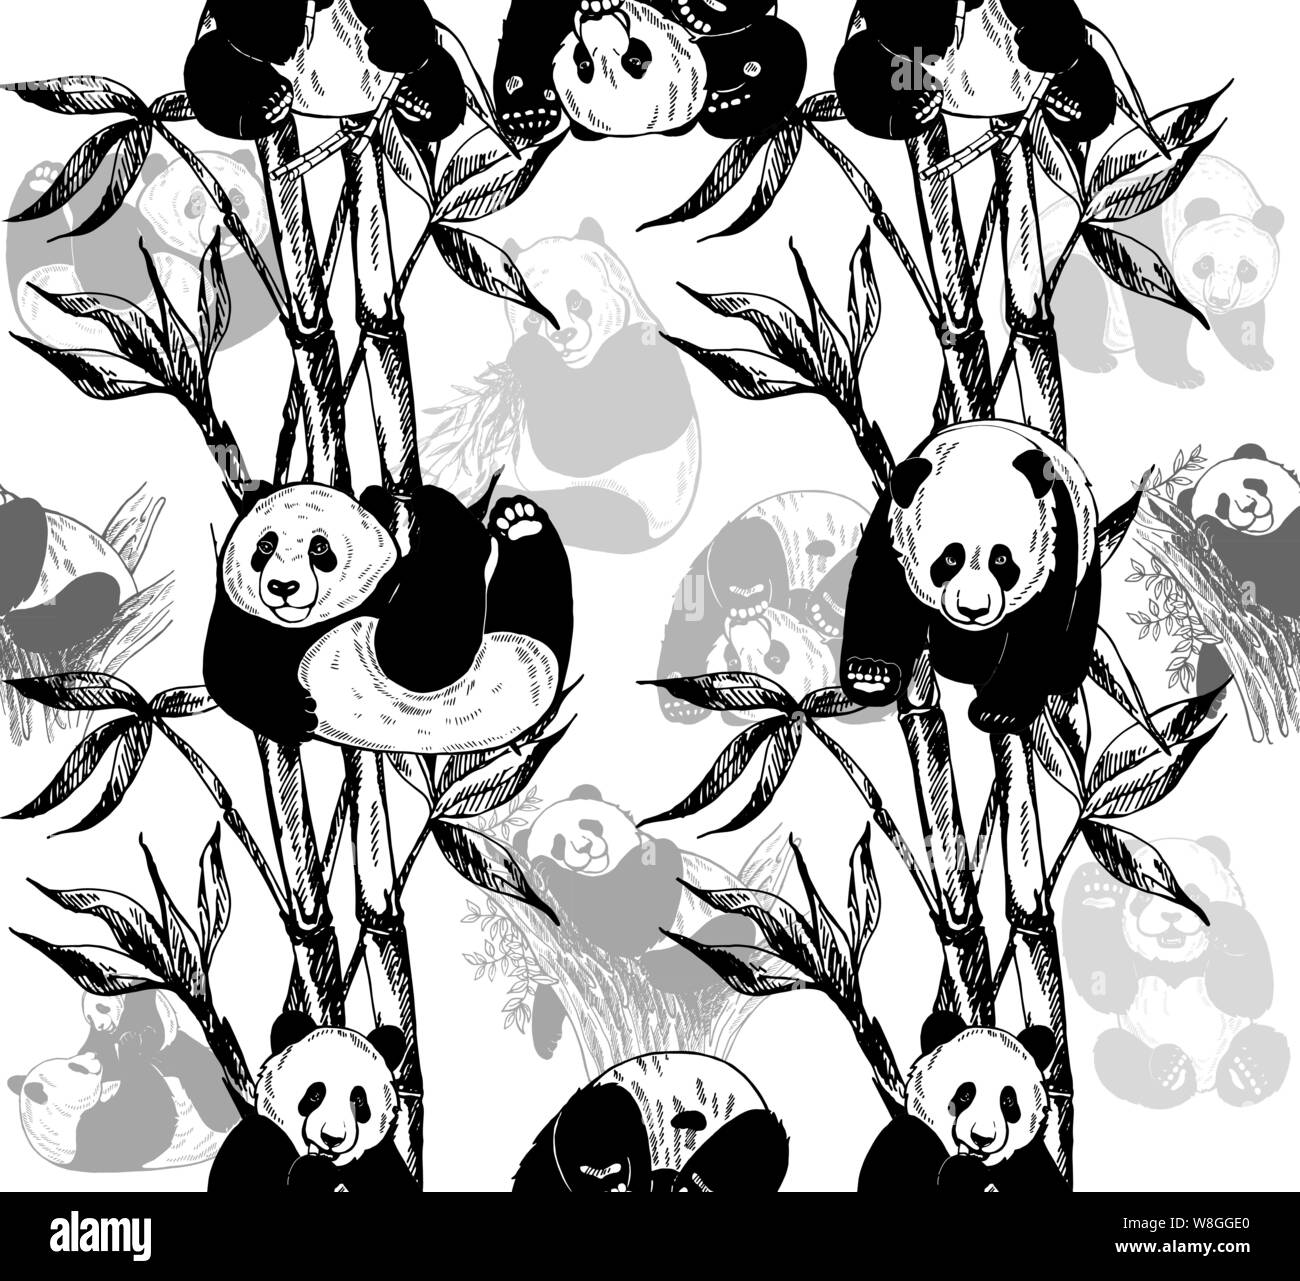 Nahtlose Muster von Hand gezeichnete Skizze stil Pandas und Bambus Stängel und Blätter auf weißem Hintergrund. Vector Illustration. Stock Vektor